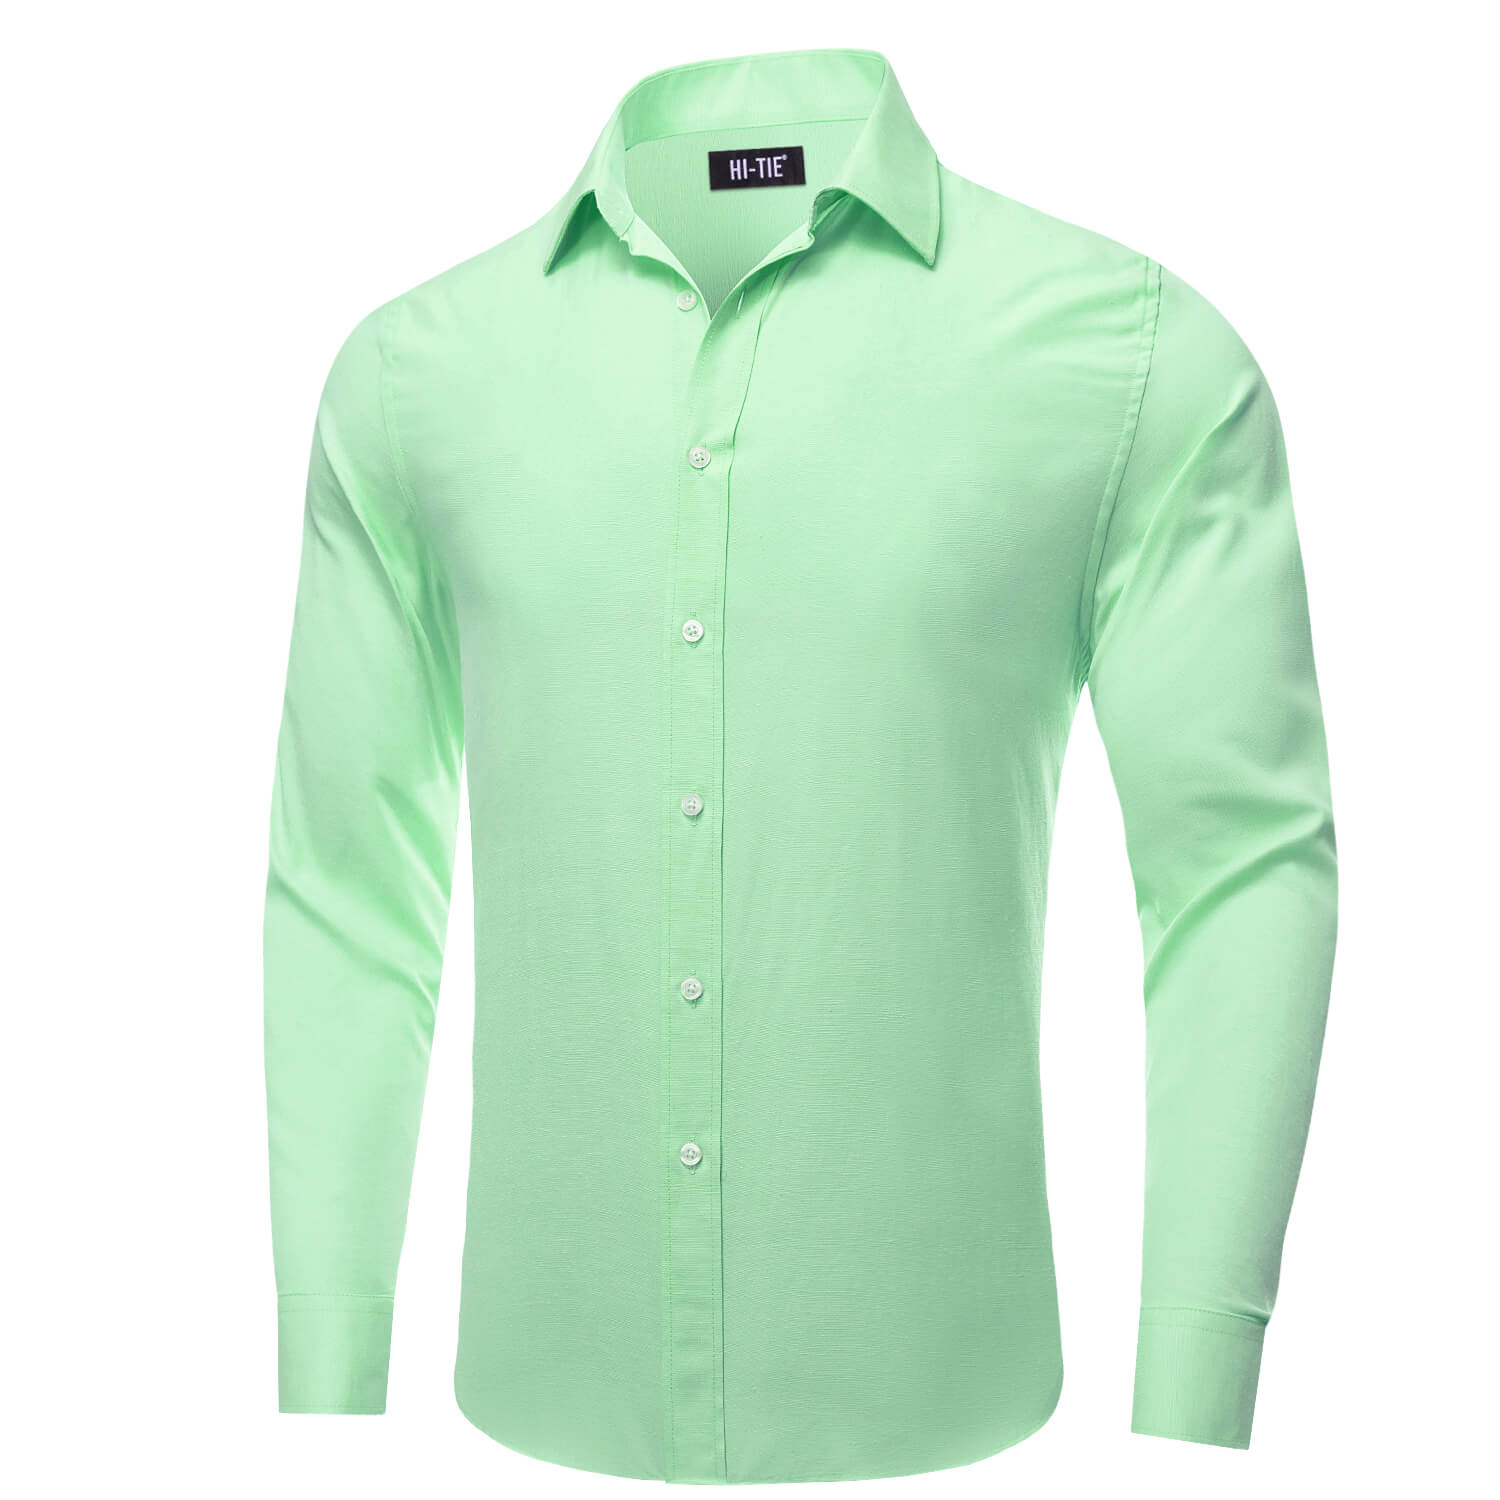 Hi-Tie Button Down Shirt Pale Green Solid Men's Silk Dress Shirt New Hot